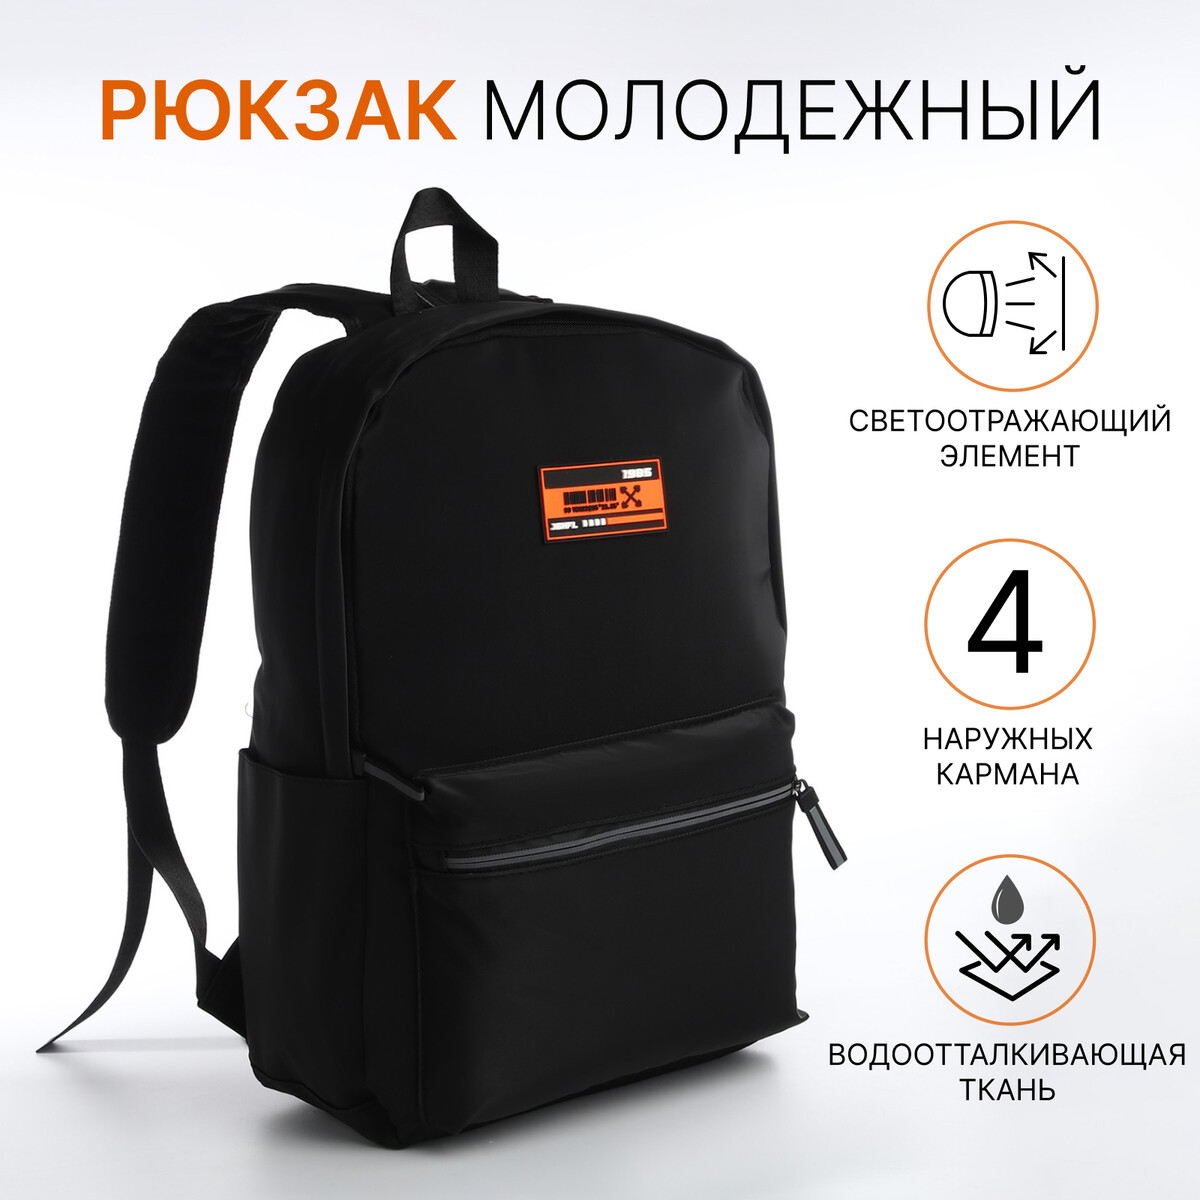 Рюкзак молодежный из текстиля на молнии, 4 кармана, цвет черный/оранжевый рюкзак молодежный grizzly анатомический оранжевый rb 456 4 1